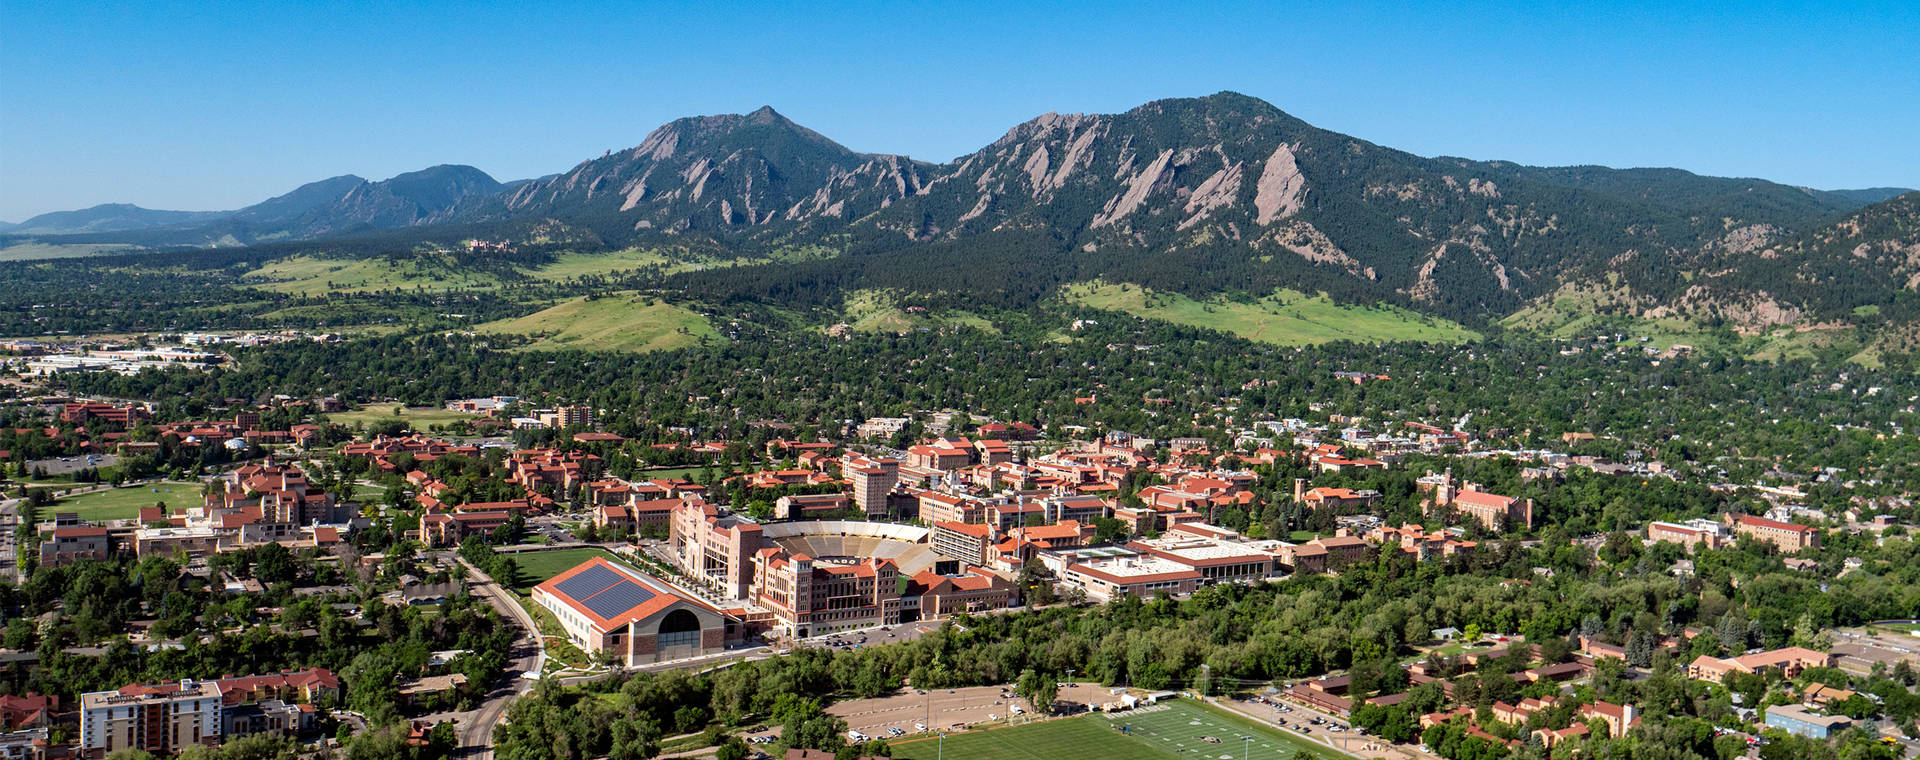 Vistaaerea Dell'università Del Colorado Sfondo